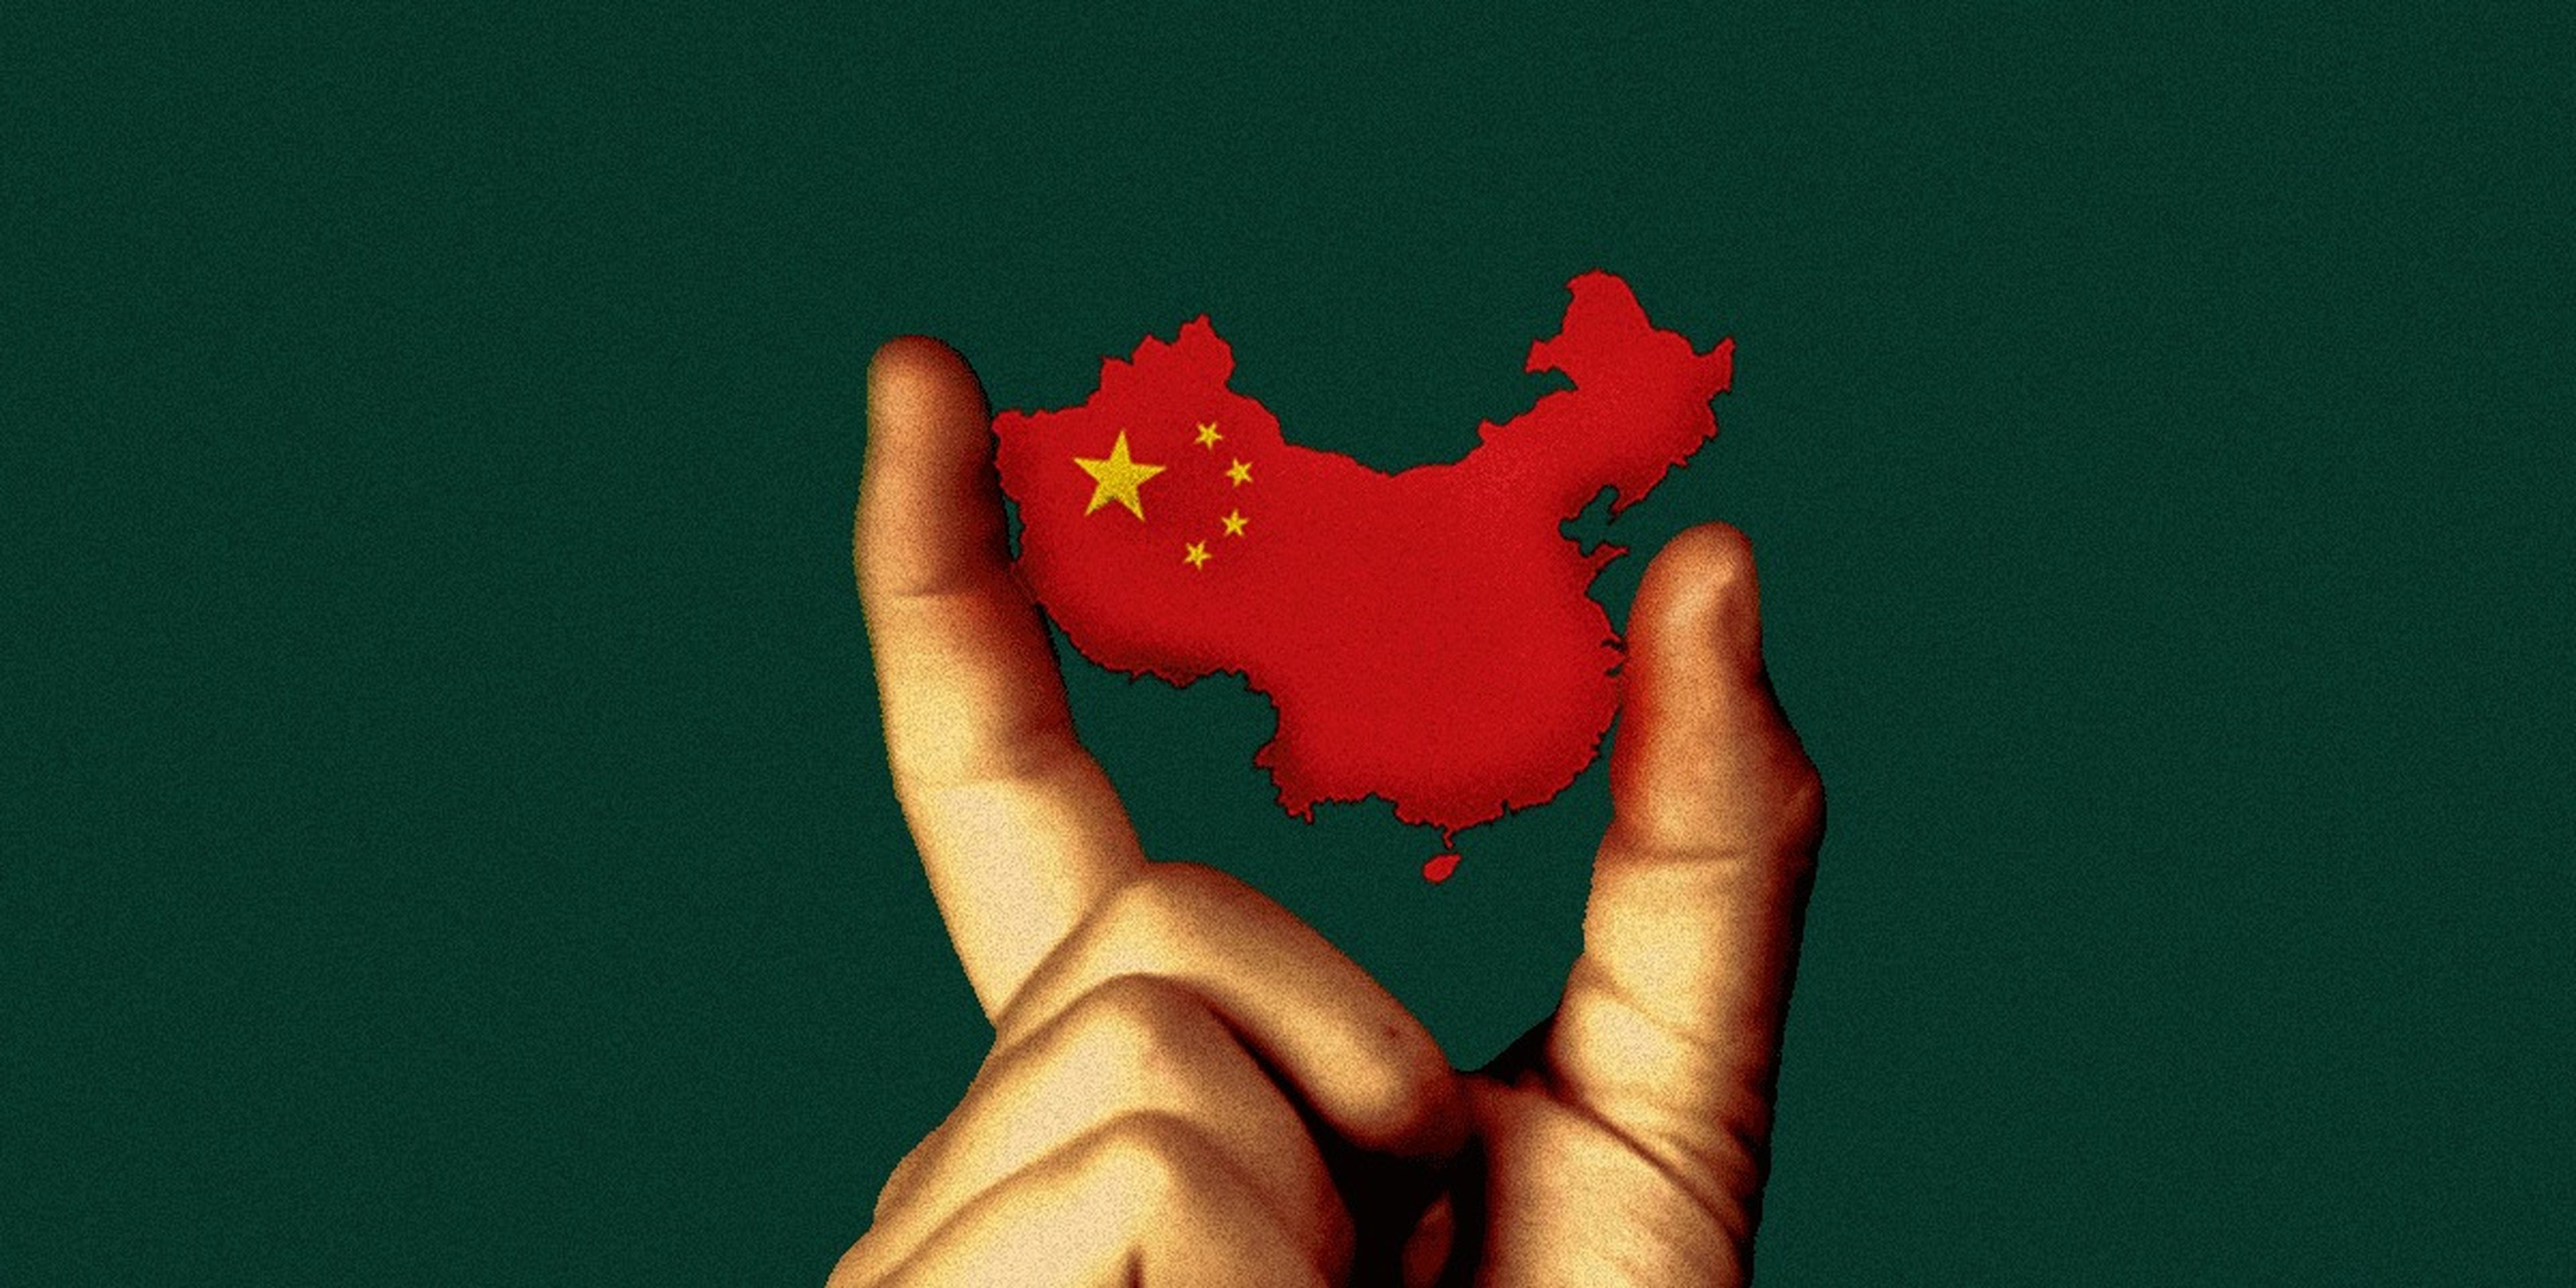 Bandera de China